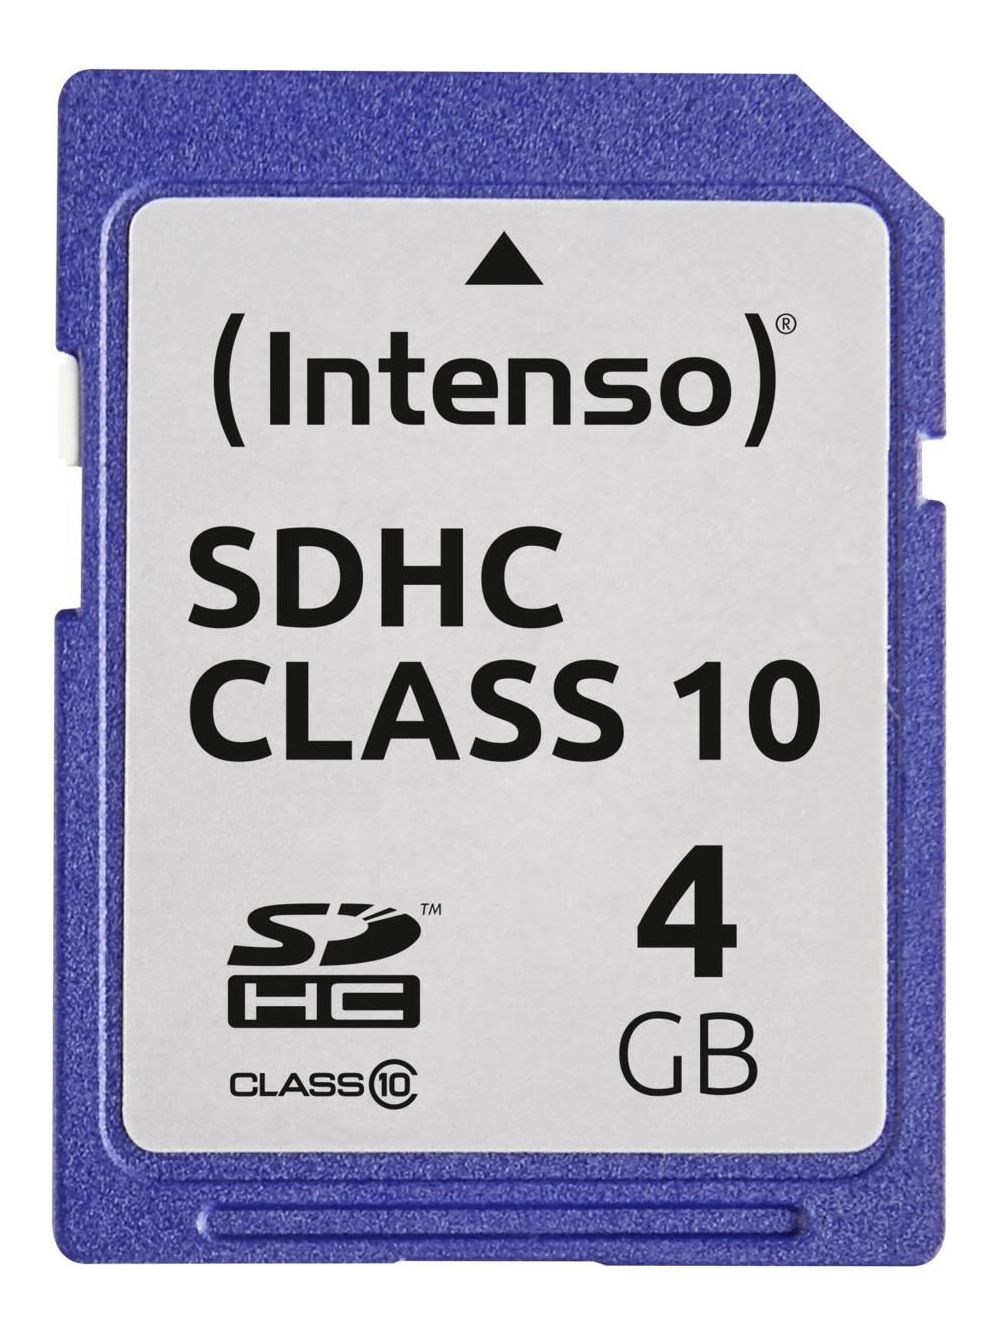 Speicherkarte günstig Kaufen-Intenso SDHC Speicherkarte Class 10 4GB. Intenso SDHC Speicherkarte Class 10 4GB . 